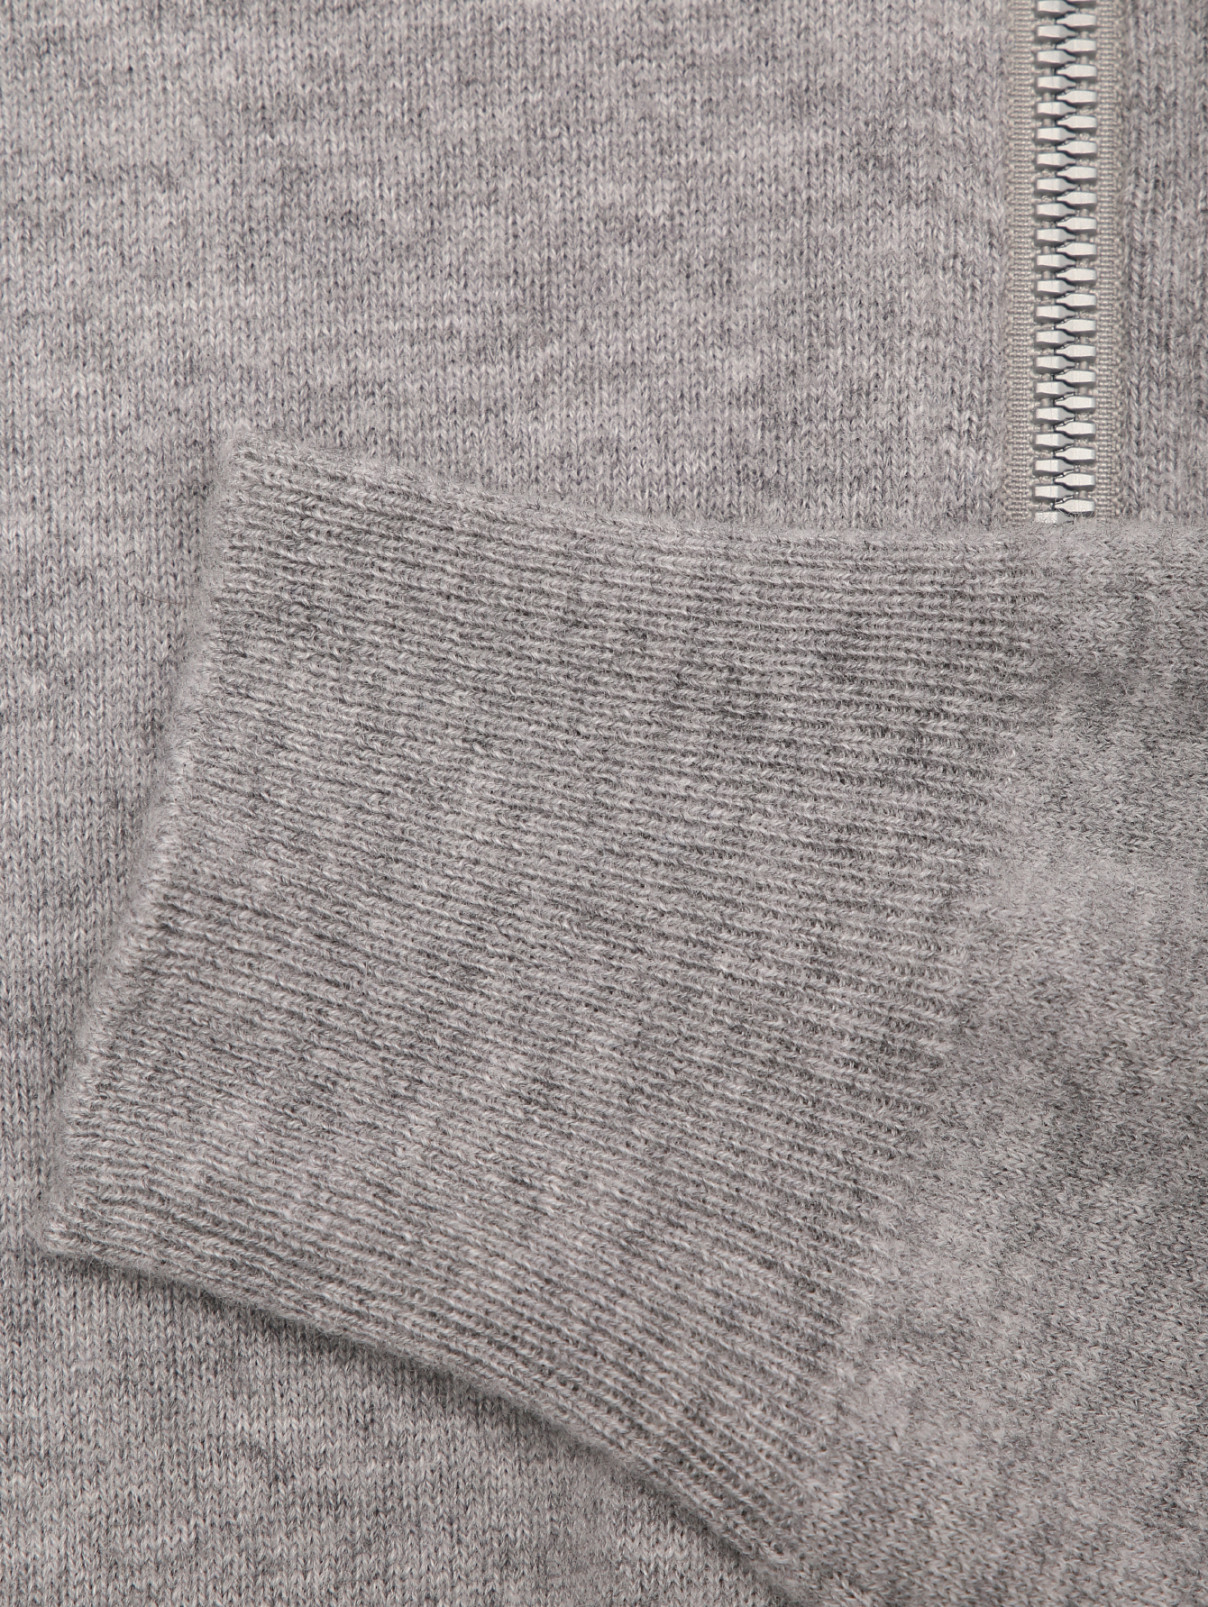 Kangra Cashmere серая толстовка из шерсти с капюшоном (568381), купить